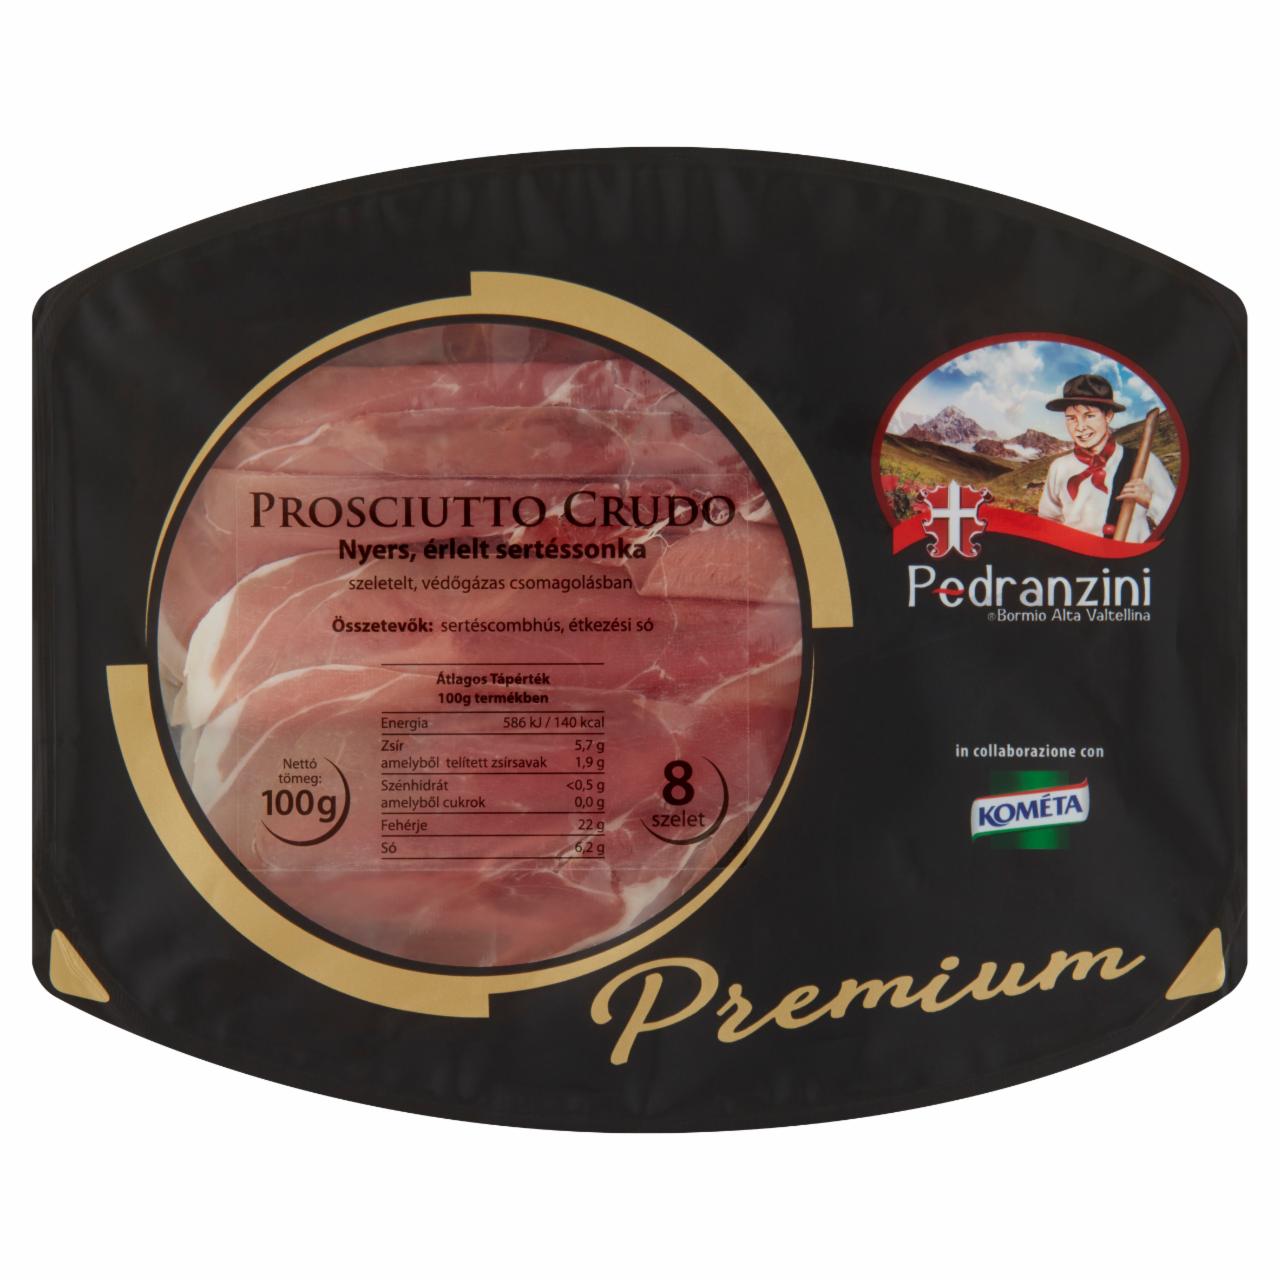 Képek - Pedranzini Premium Prosciutto Crudo nyers érlelt sertéssonka 8 szelet 100 g